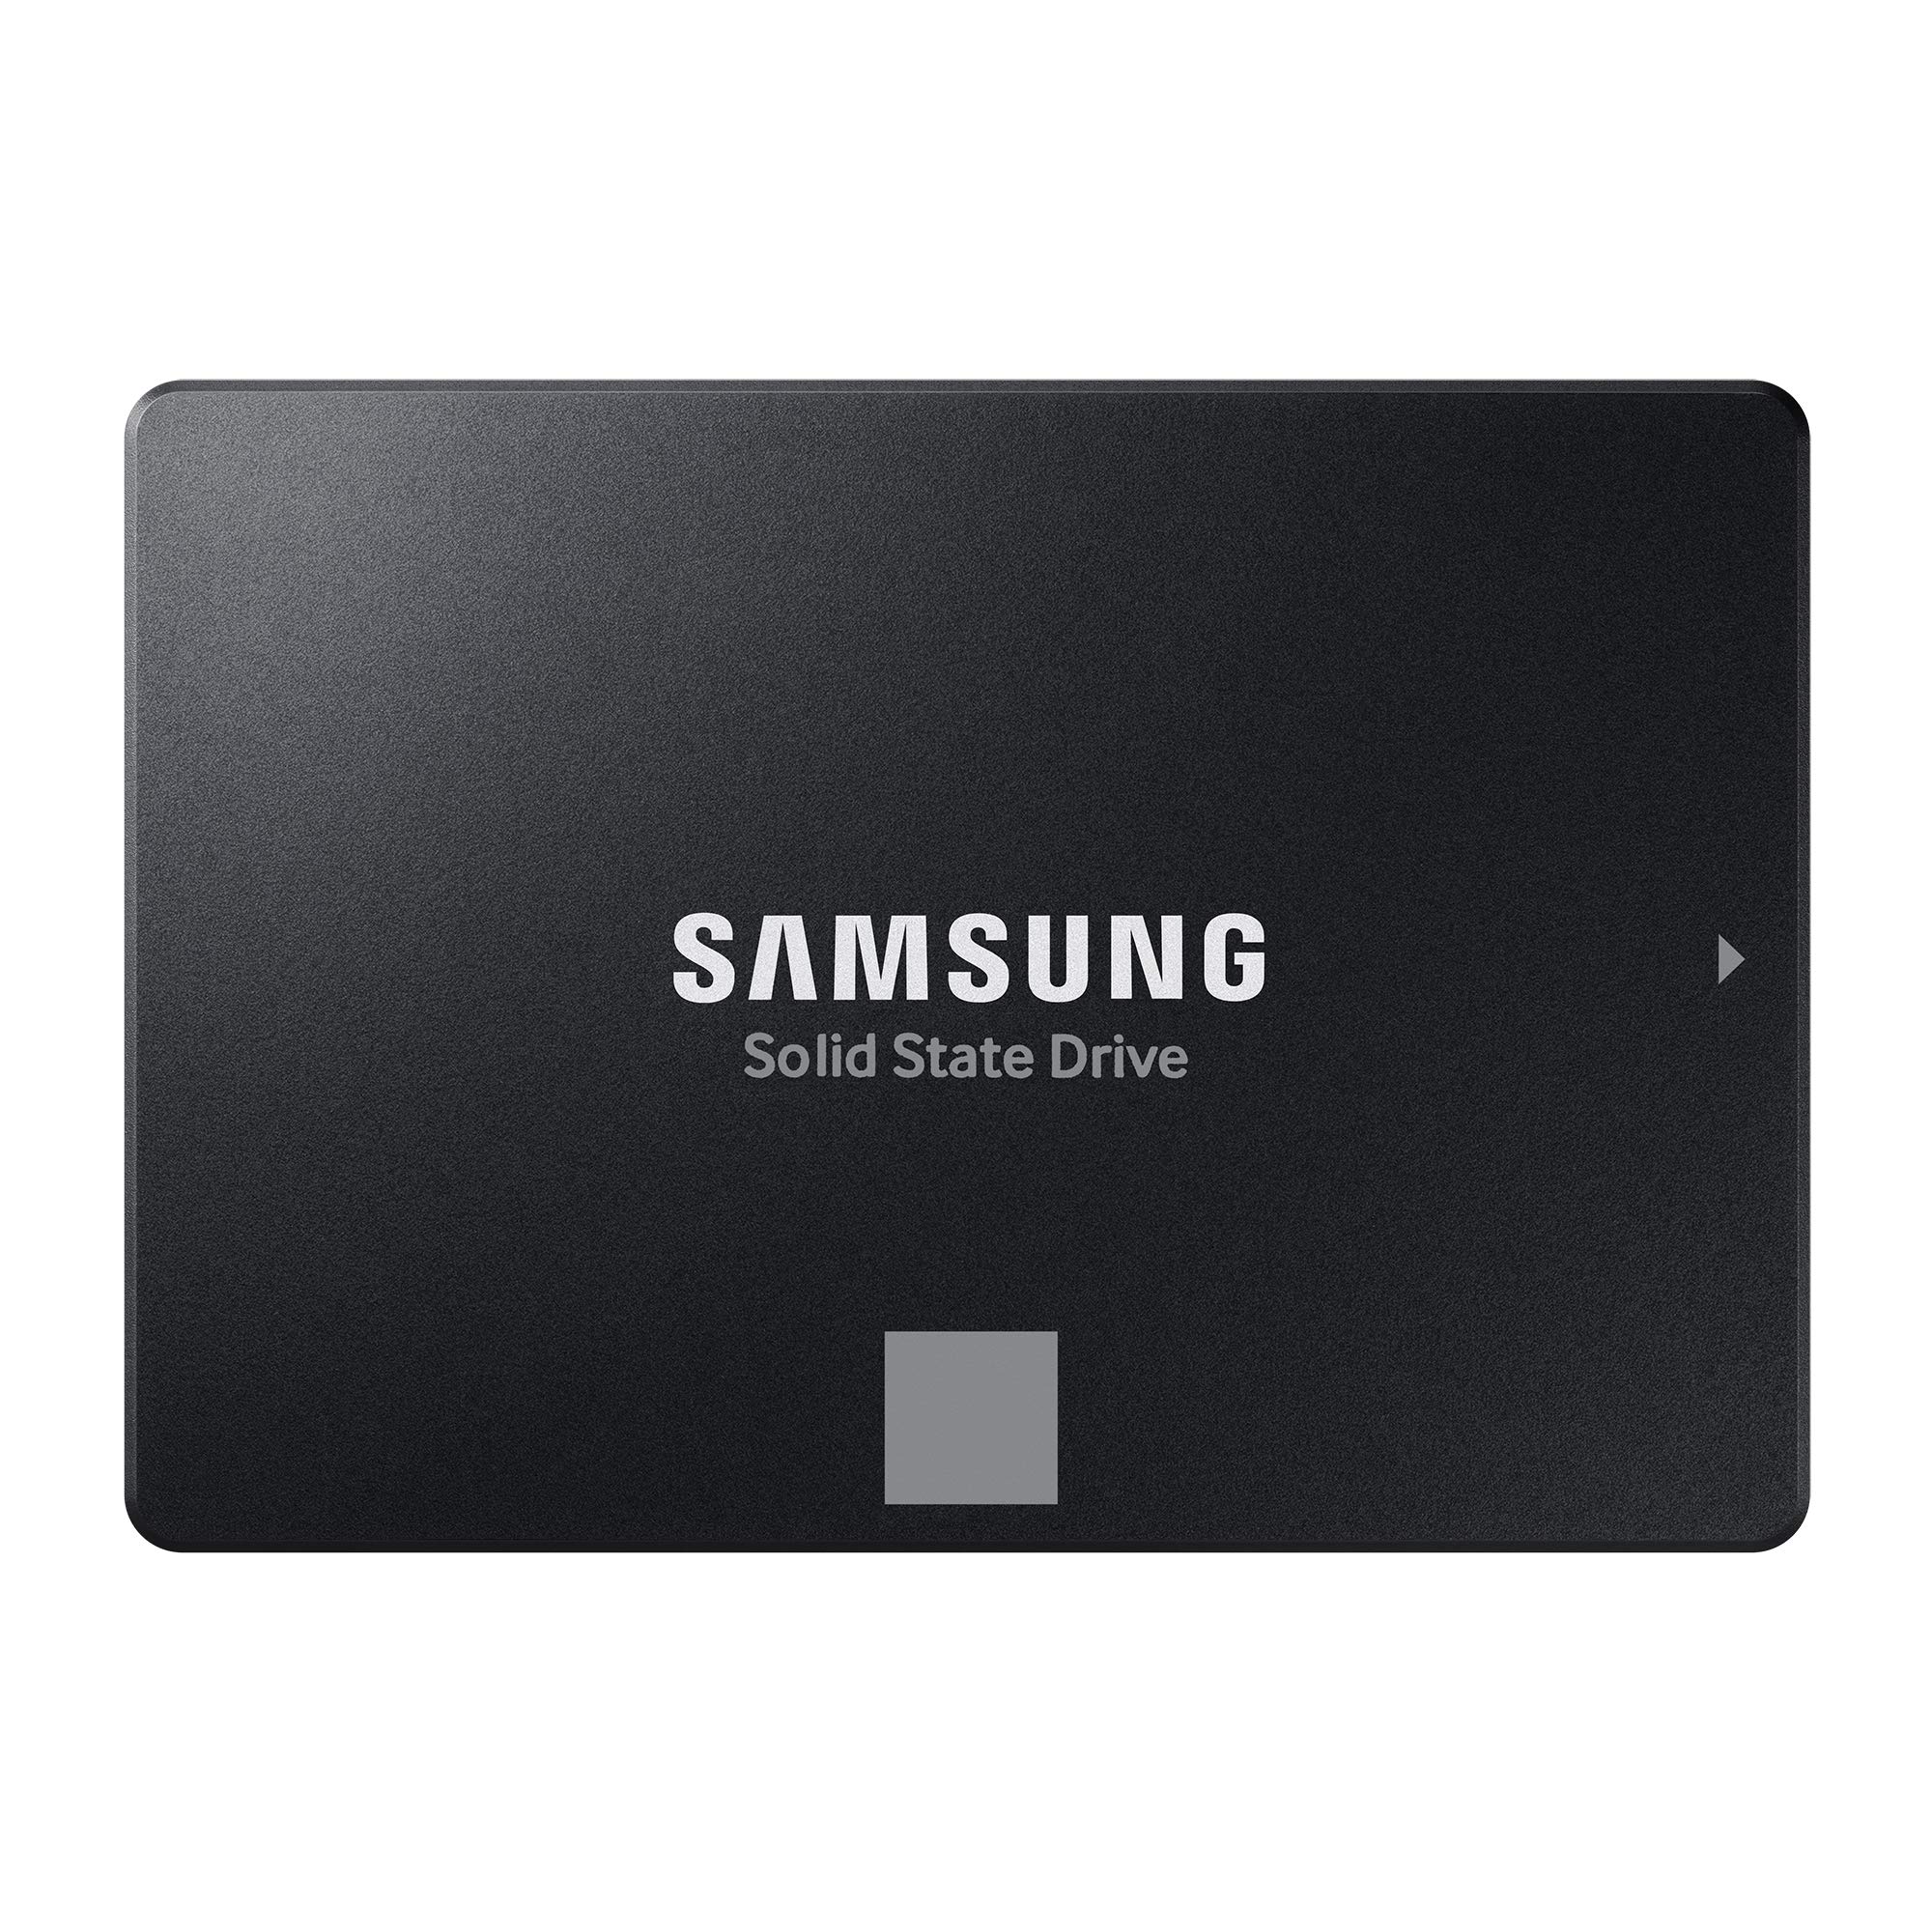 SAMSUNG SSD 870 EVO 4TB フォームファクター 2.5インチ インテリジェントターボライト Magician 6ソフ